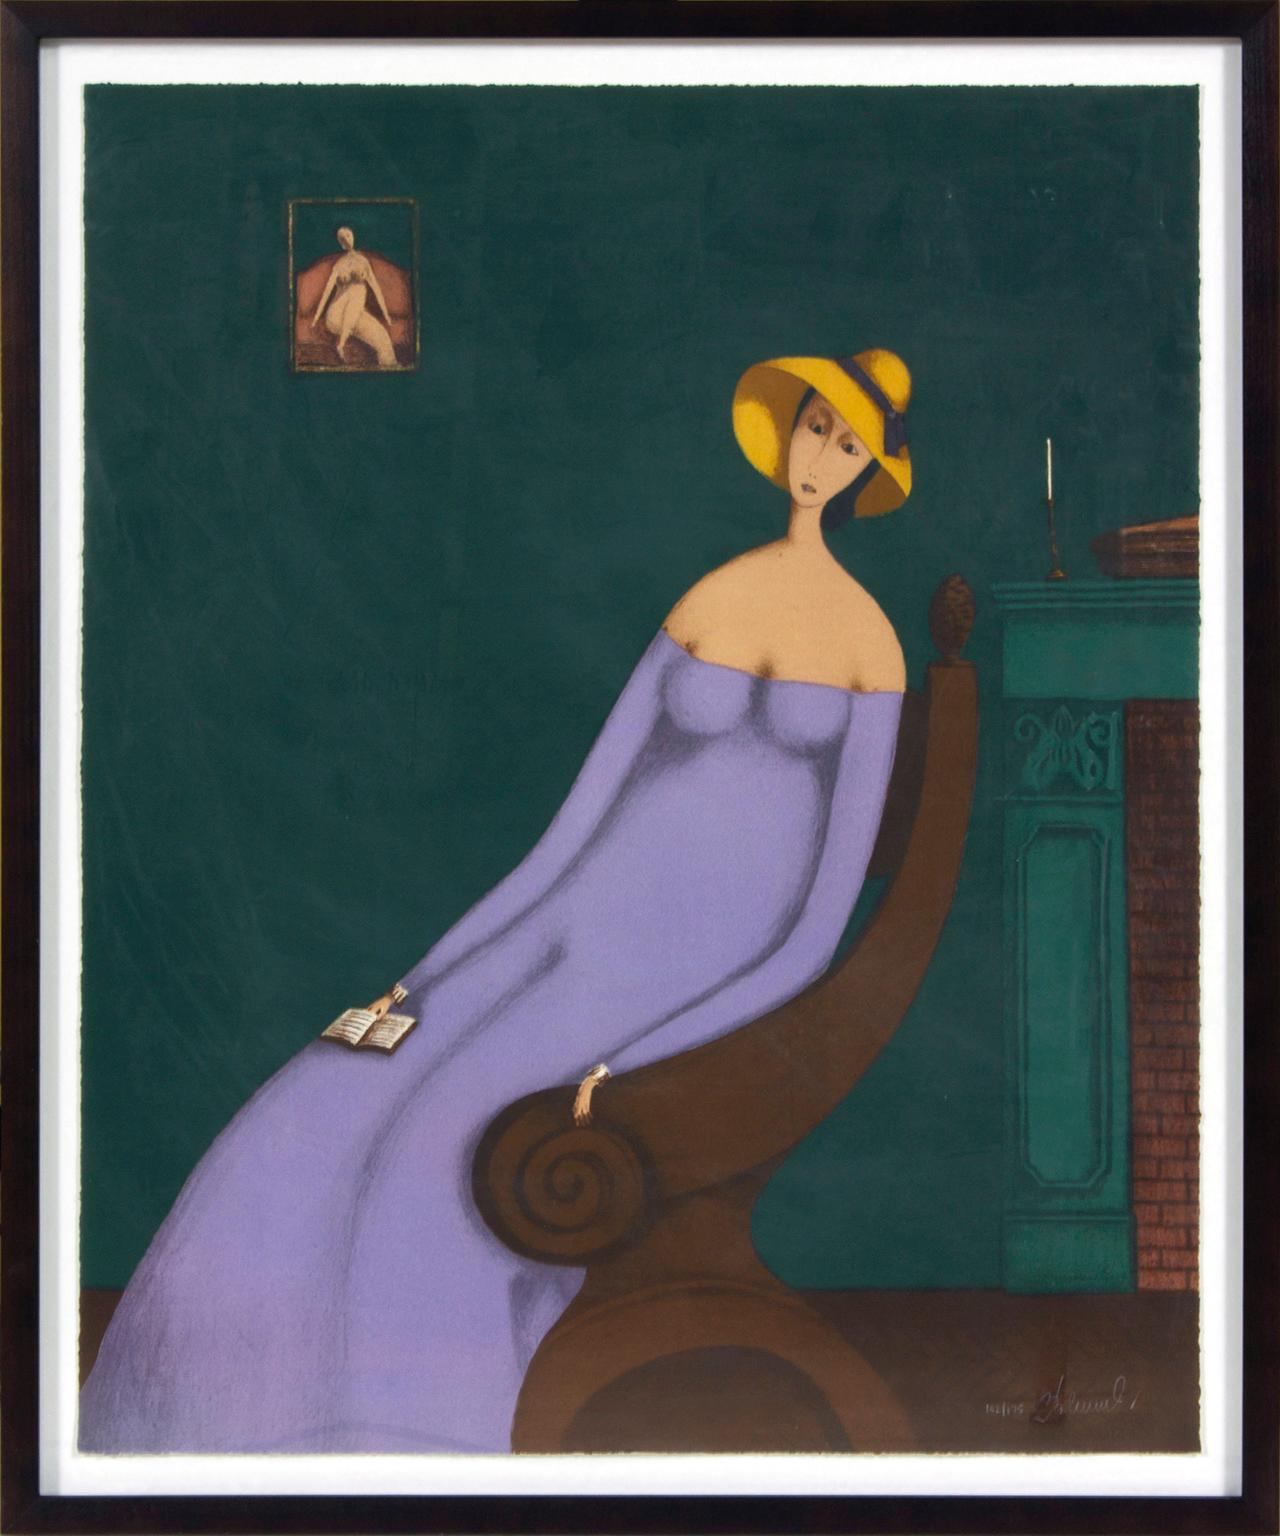 Die Lithografie "Frau mit Buch" des Künstlers Branko Bahunek zeigt eine Frau mit einem Buch, die neben einem Kamin unter dem Porträt einer nackten Frau auf einer Couch sitzt. Signiert und nummeriert 102/175. 